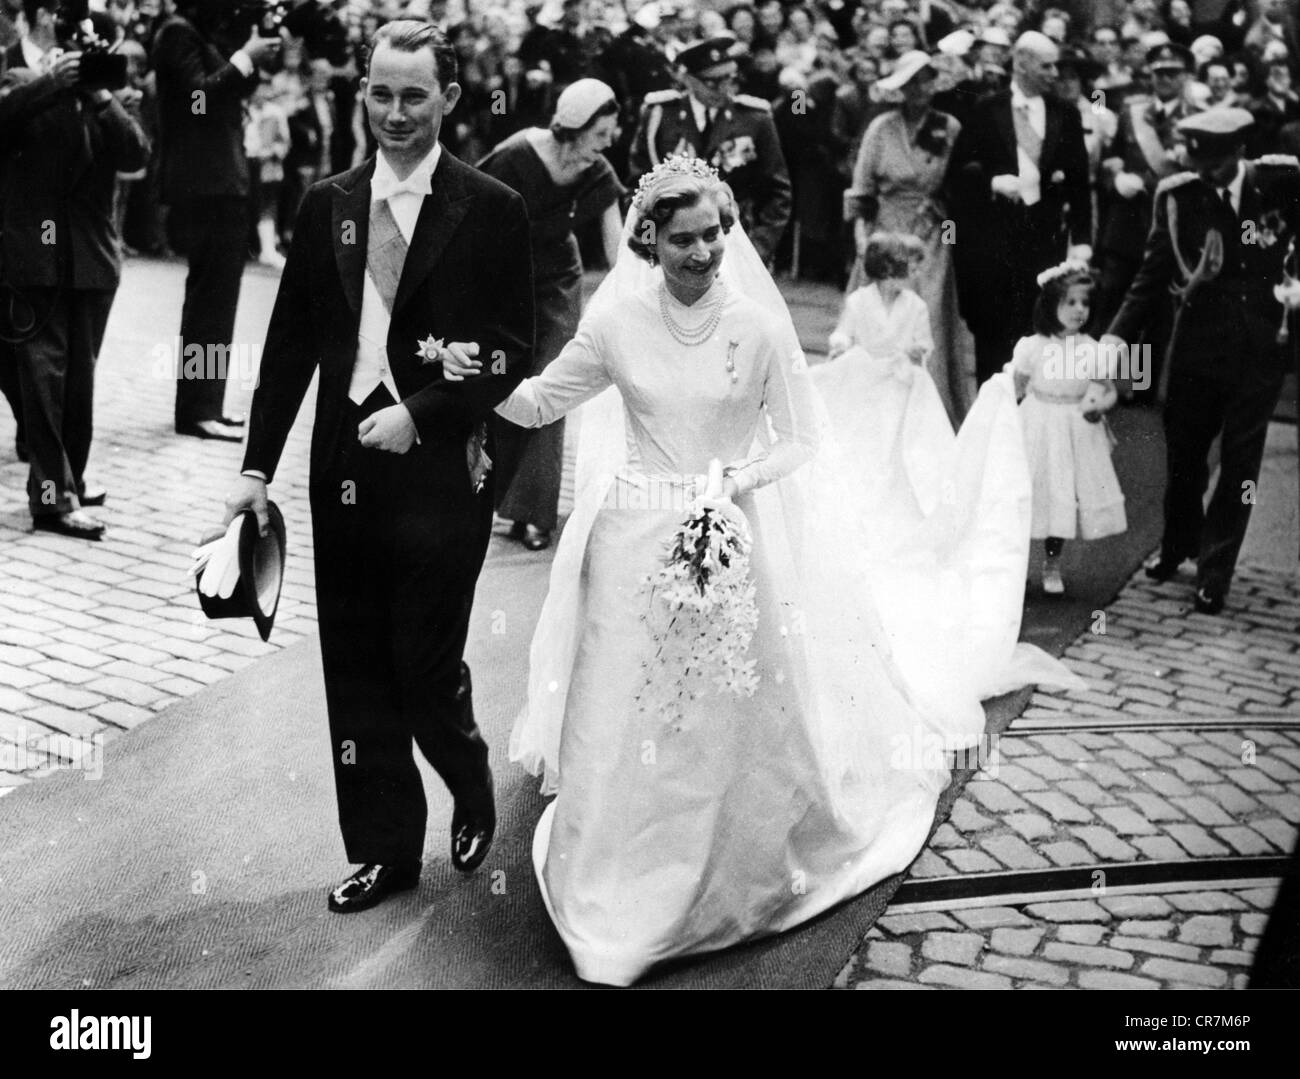 Elisabeth, 22.12.1922 - 22.11.2011, princesse de Luxembourg, pleine longueur, mariée, avec son mari Franz Duke of Hohenberg, cathédrale de Luxembourg, 9.5.1956, Banque D'Images